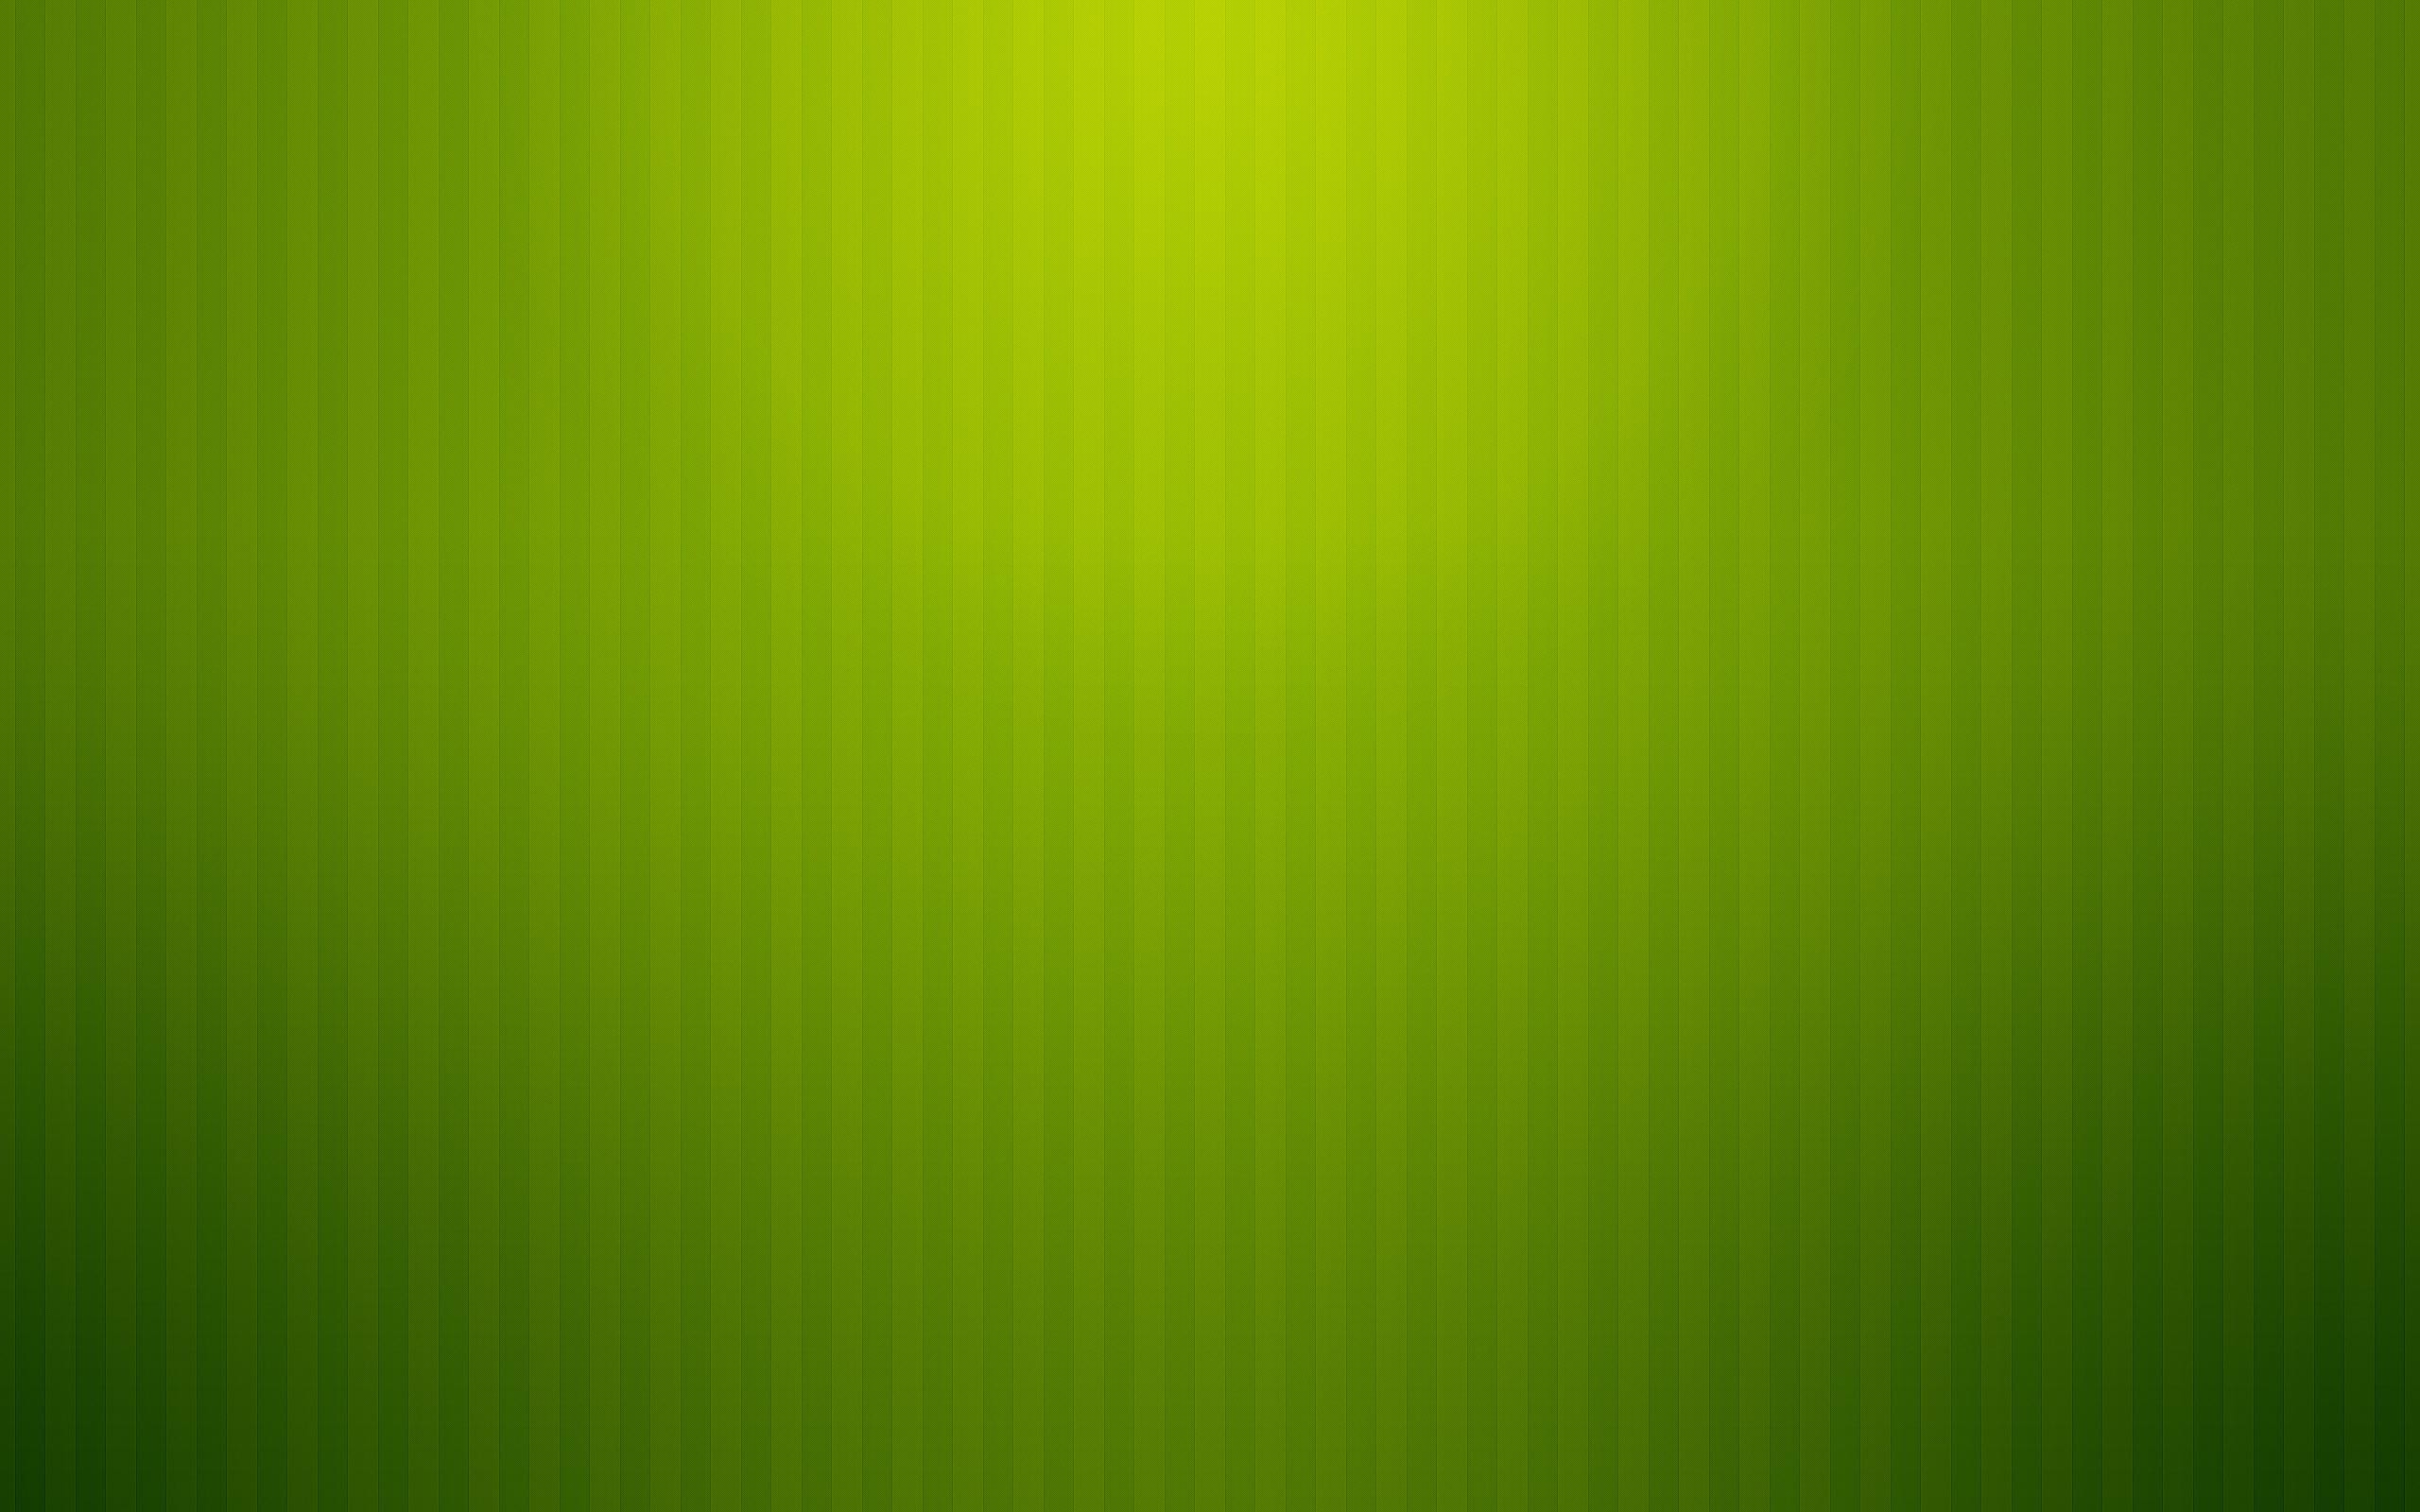 Pix For Gt Plain Mint Green Wallpaper Mint Green Plain Background Wallpaper  Wallpaper Mint Green  Fans Share